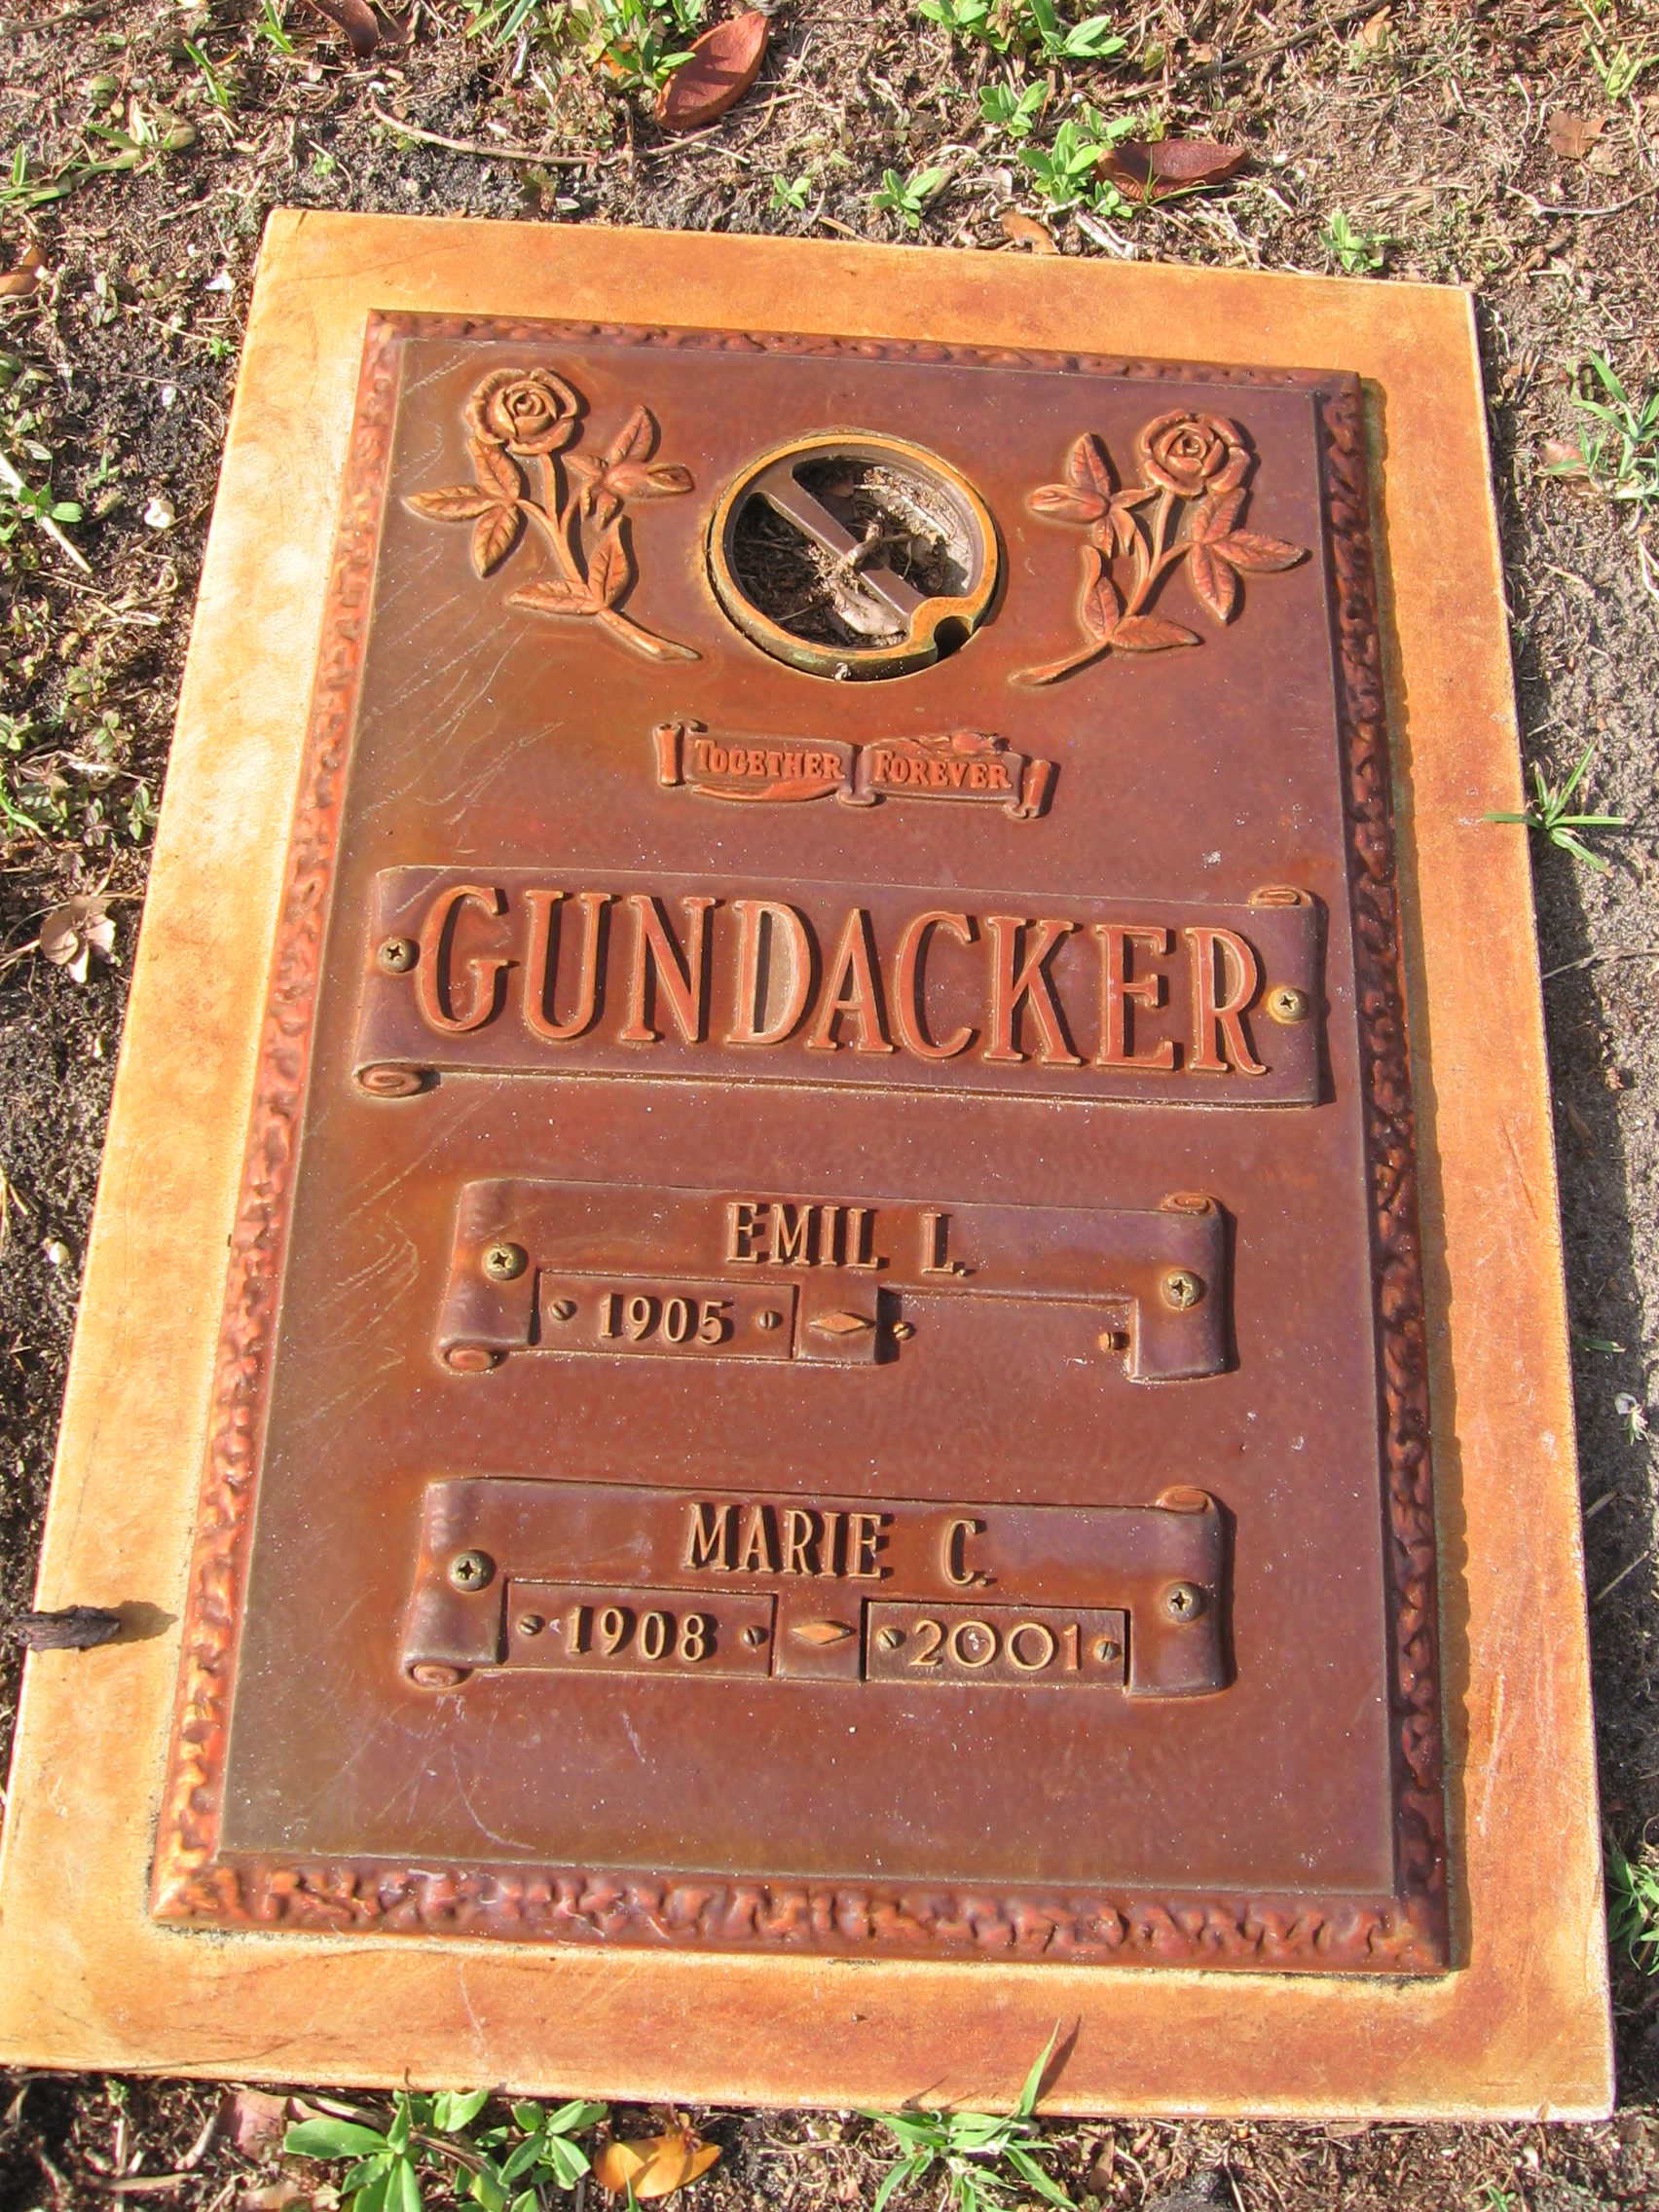 Marie C Gundacker